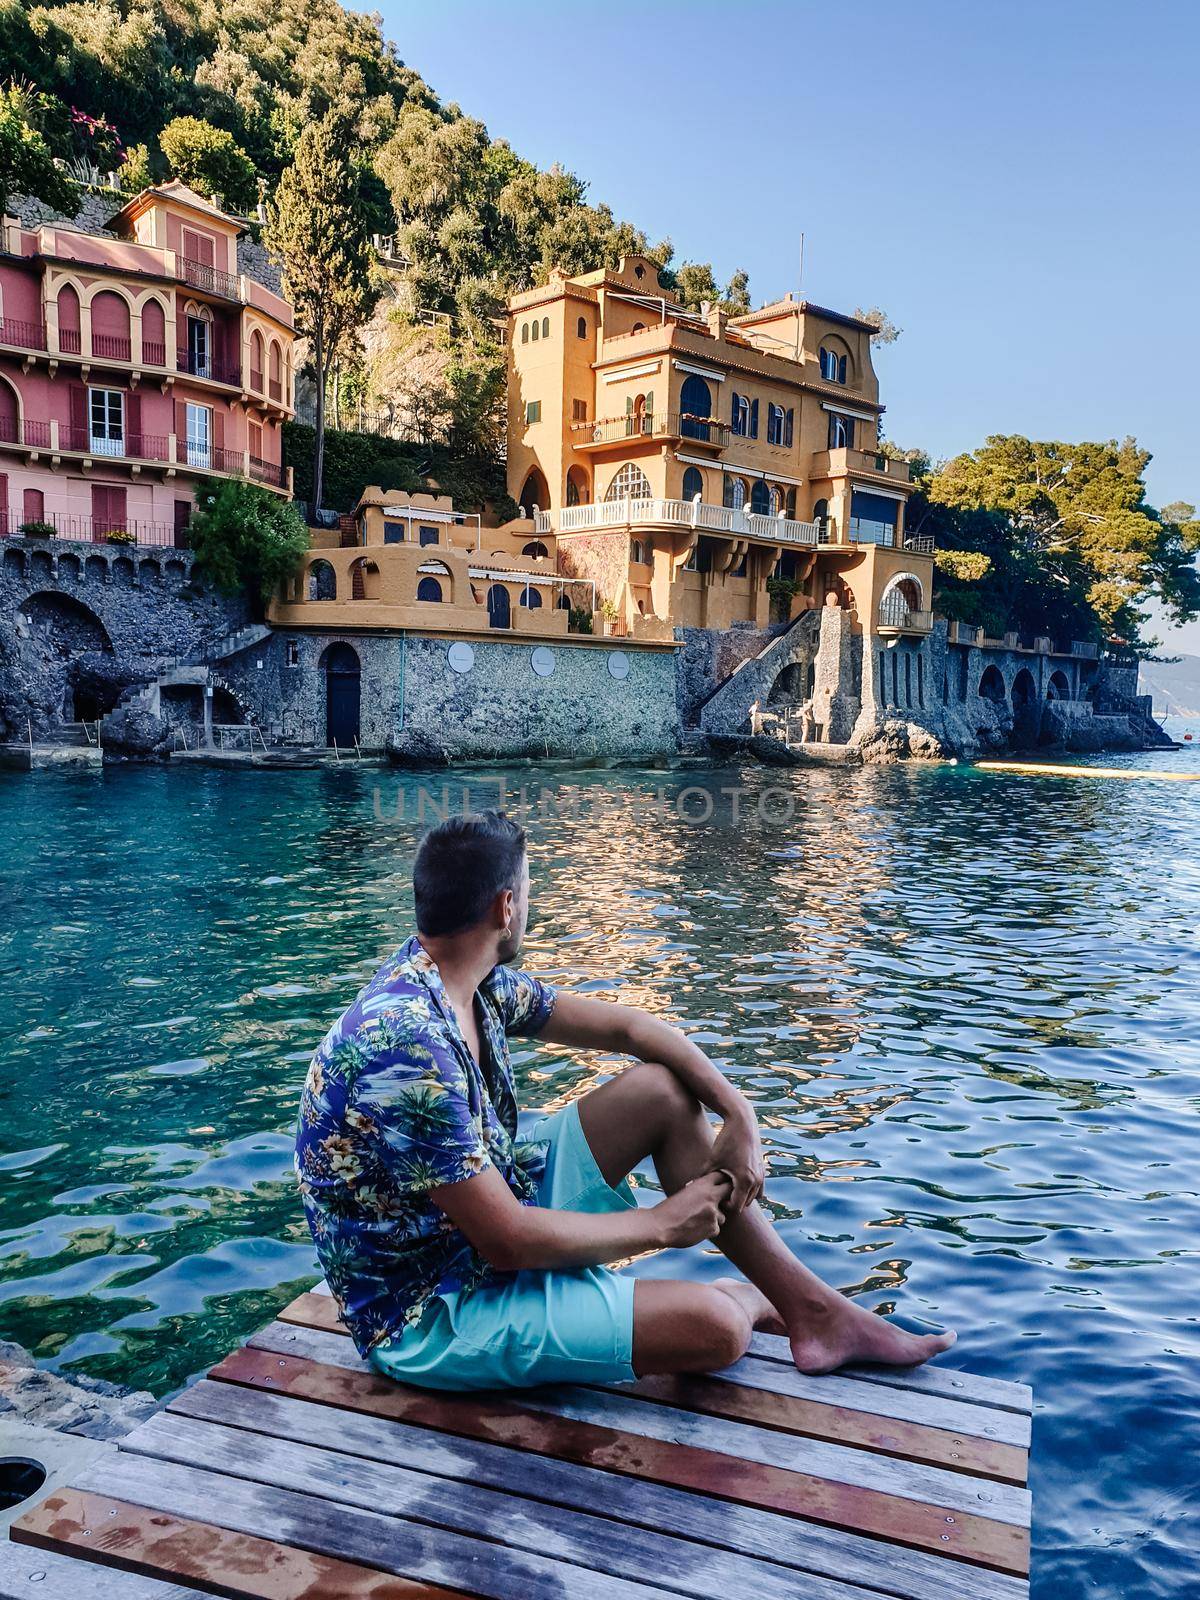 Portofino Liguria Italy, Beautiful bay with colorful houses in Portofino, Liguria, Italy.Europe, young men on vacation Italy Portofino